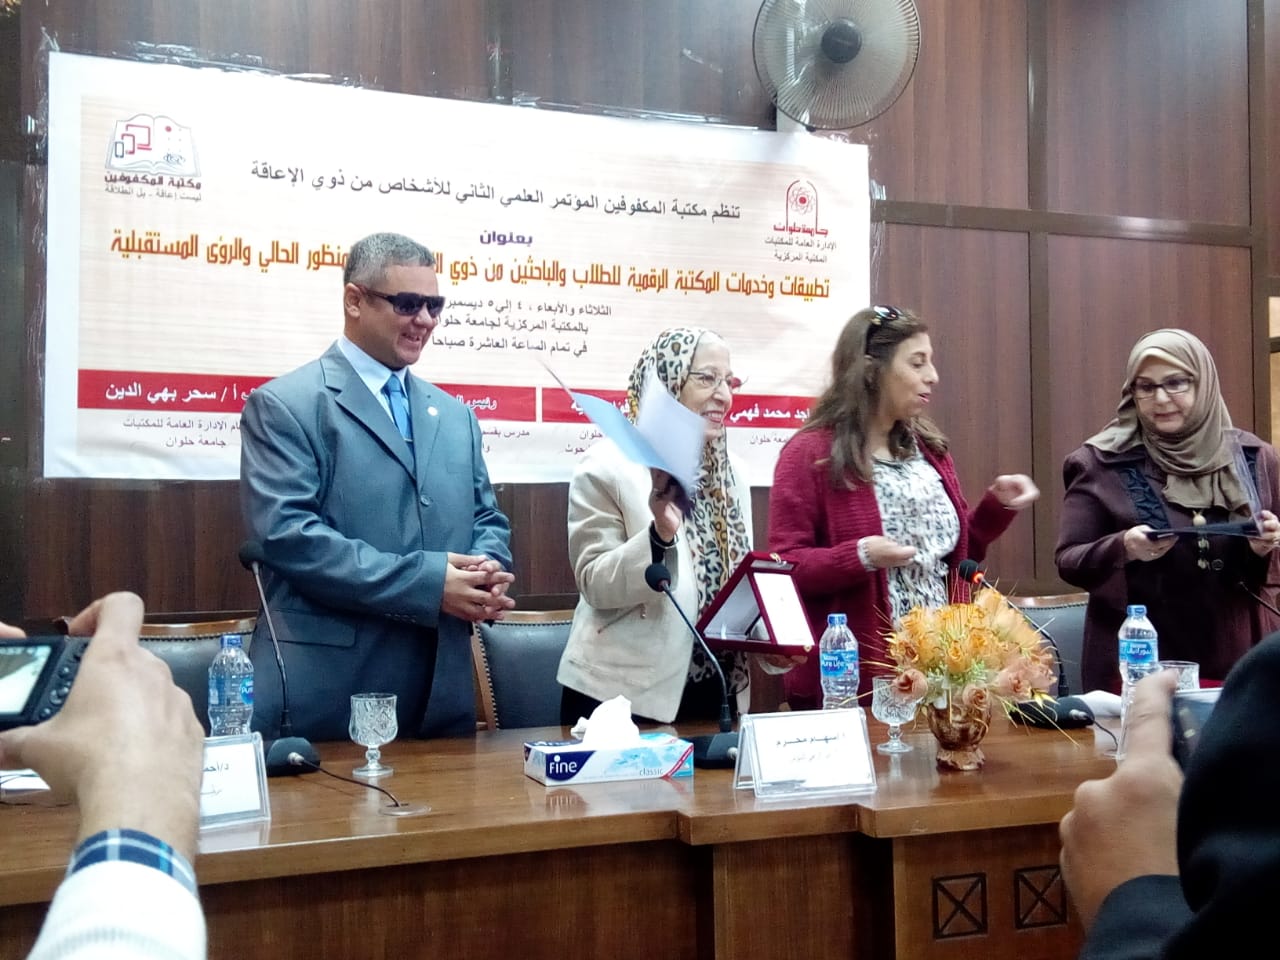 انطلاق اليوم الأول من فاعليات المؤتمر العلمى الثانى لذوى الاحتياجات الخاصة بجامعة حلوان (5)